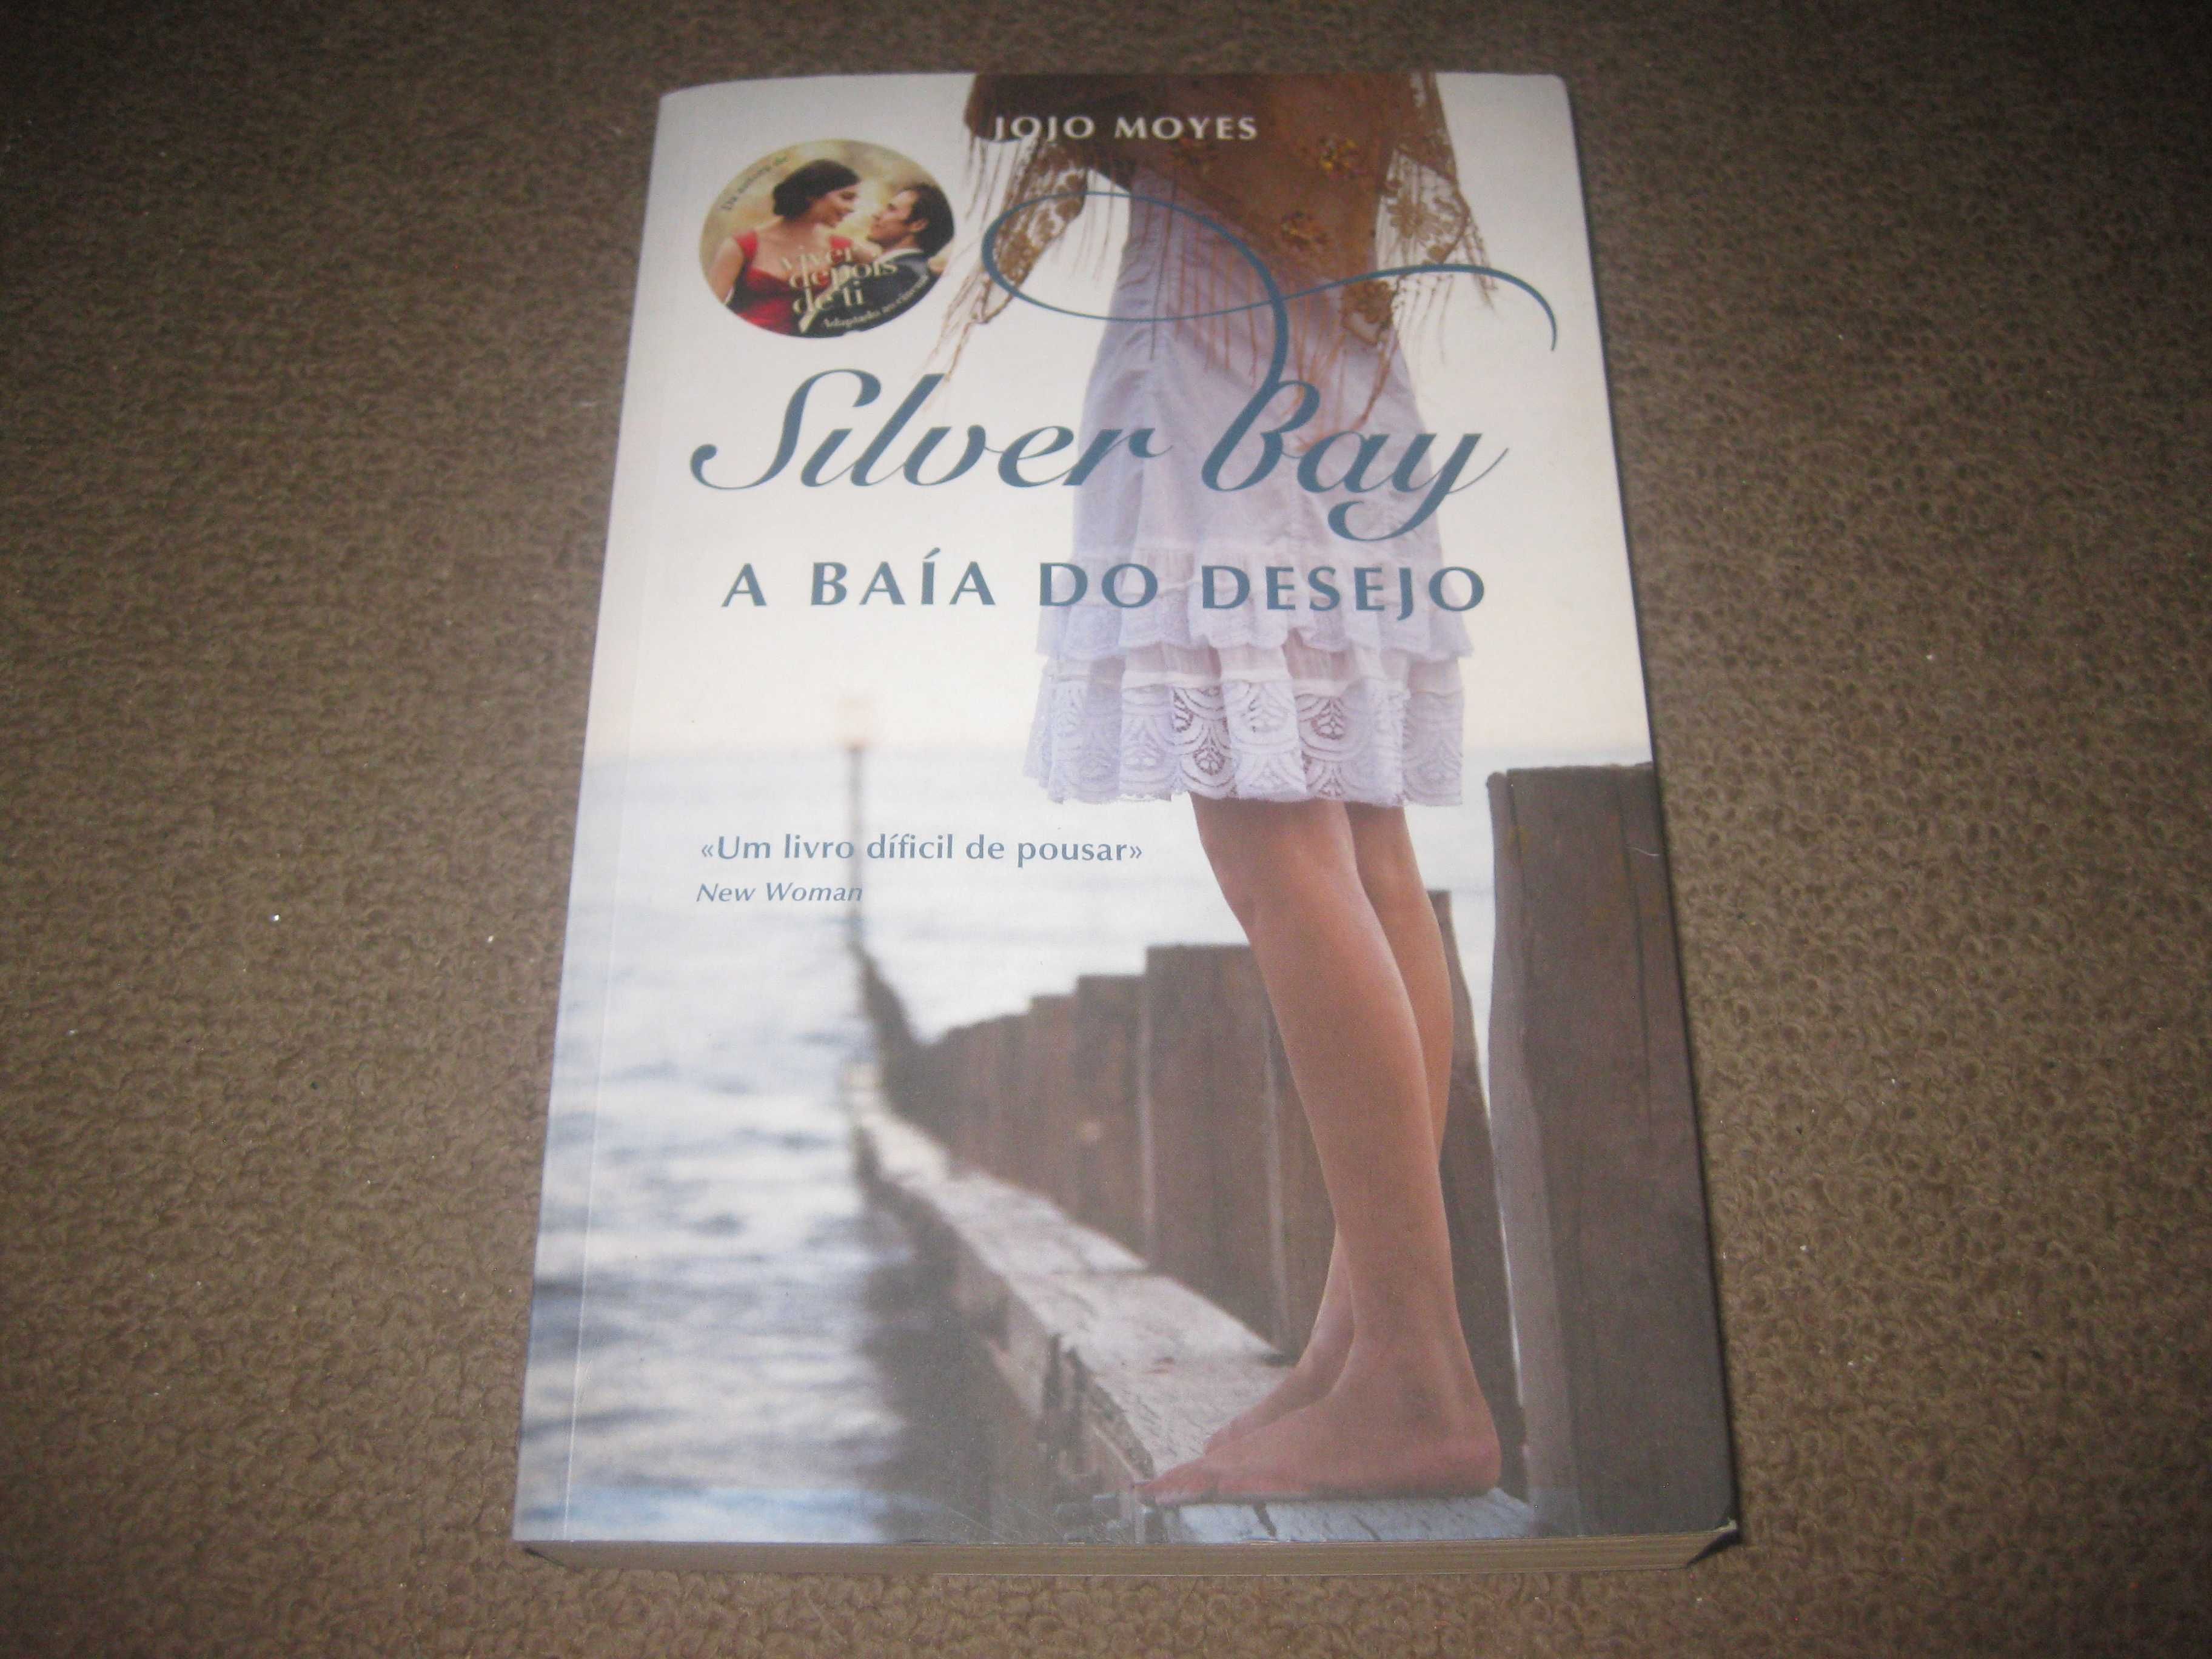 Livro "Silver Bay: A Baía do Desejo" de Jojo Moyes